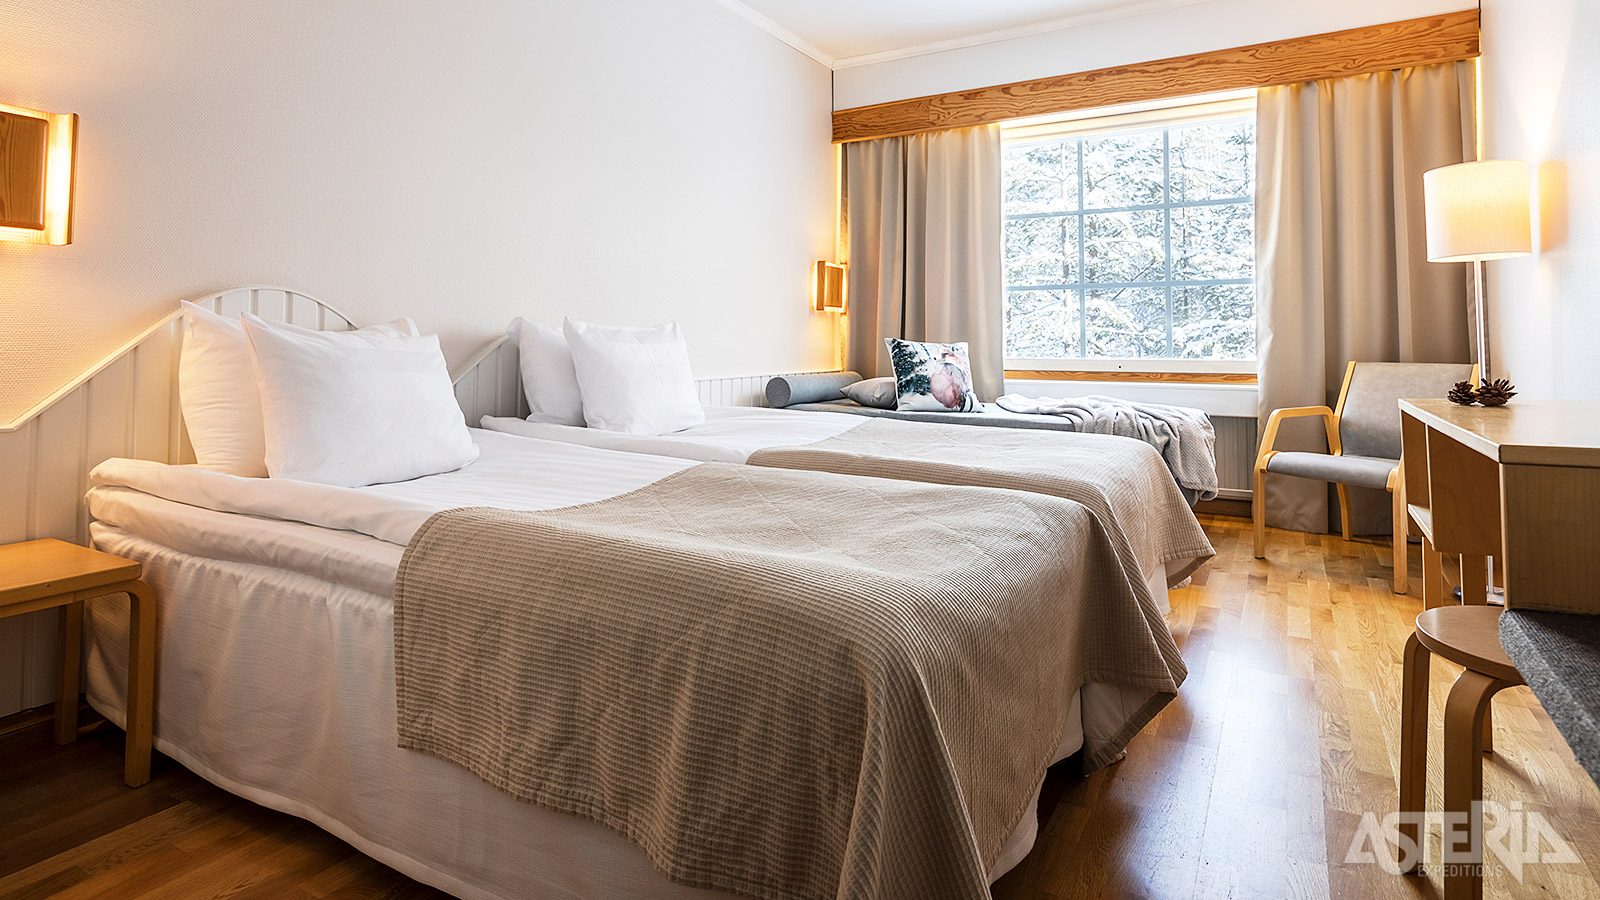 De Bear’s Lodge beschikt over 58 hotelkamers waarvan 36 standaardkamers voor 2 personen